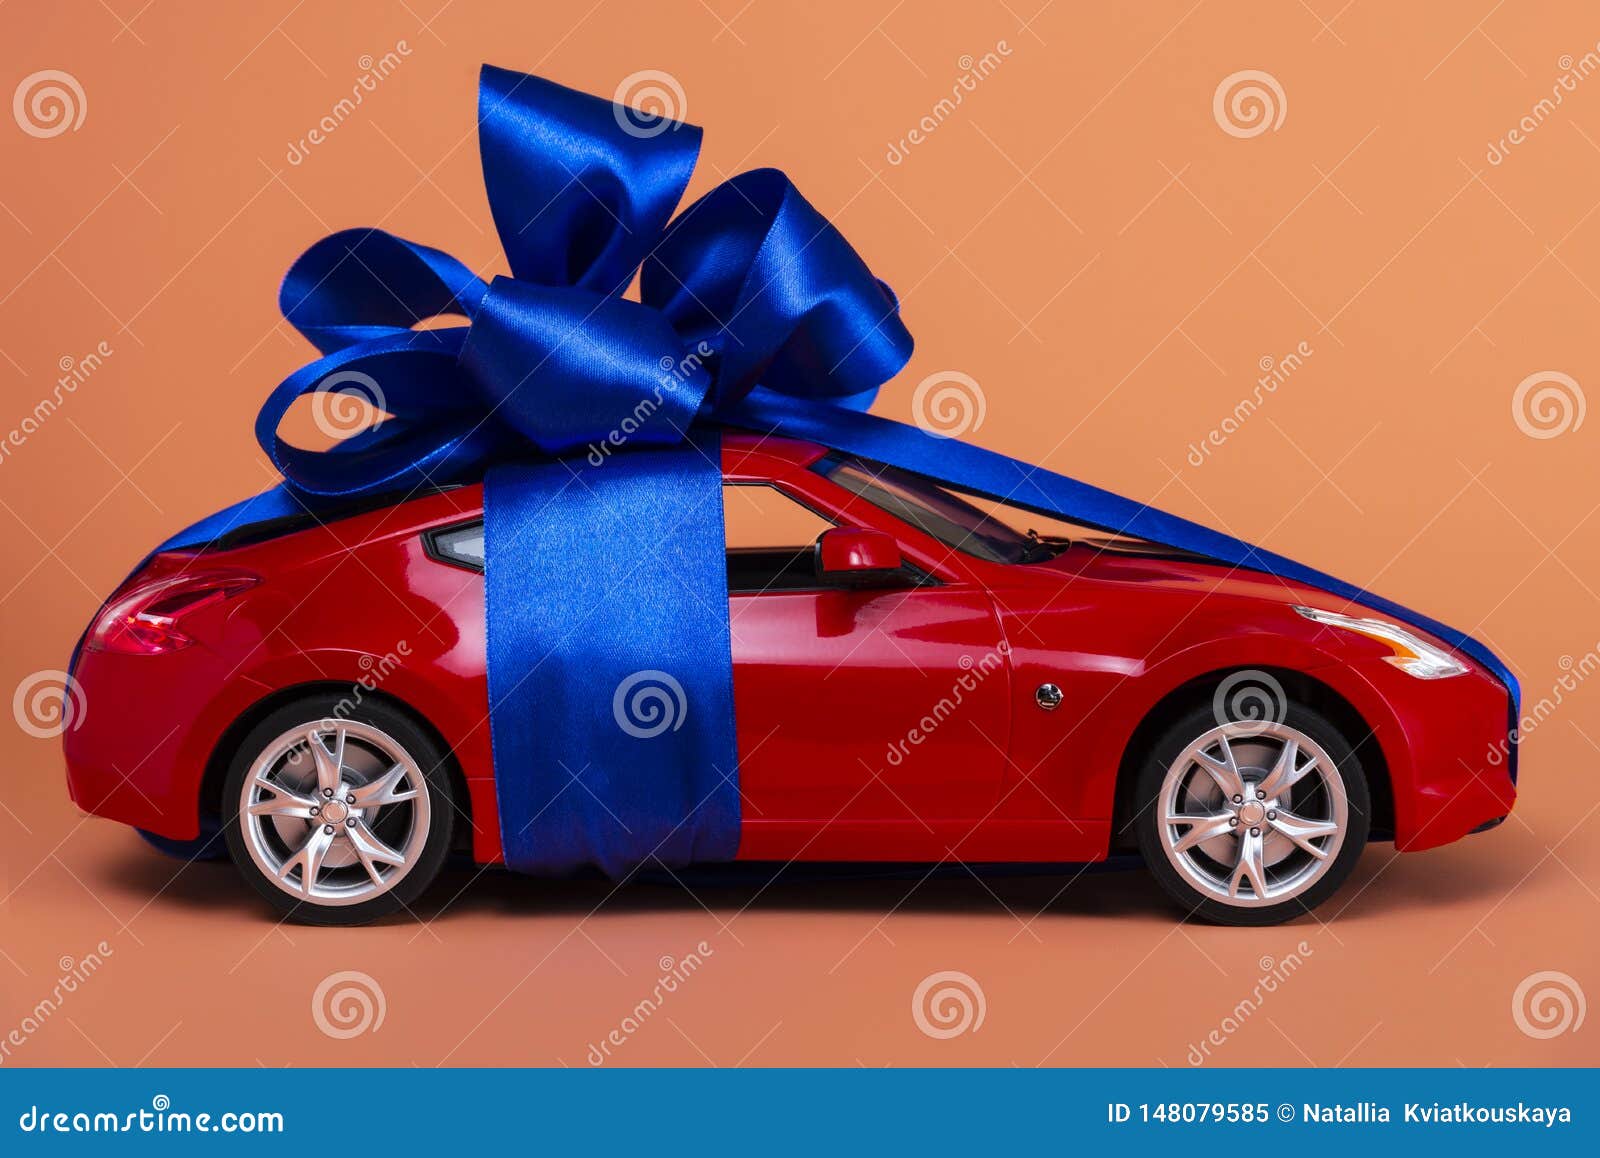 https://thumbs.dreamstime.com/z/neues-rotes-auto-mit-einem-blauen-bogen-als-geschenk-auf-korallenroten-hintergrund-148079585.jpg